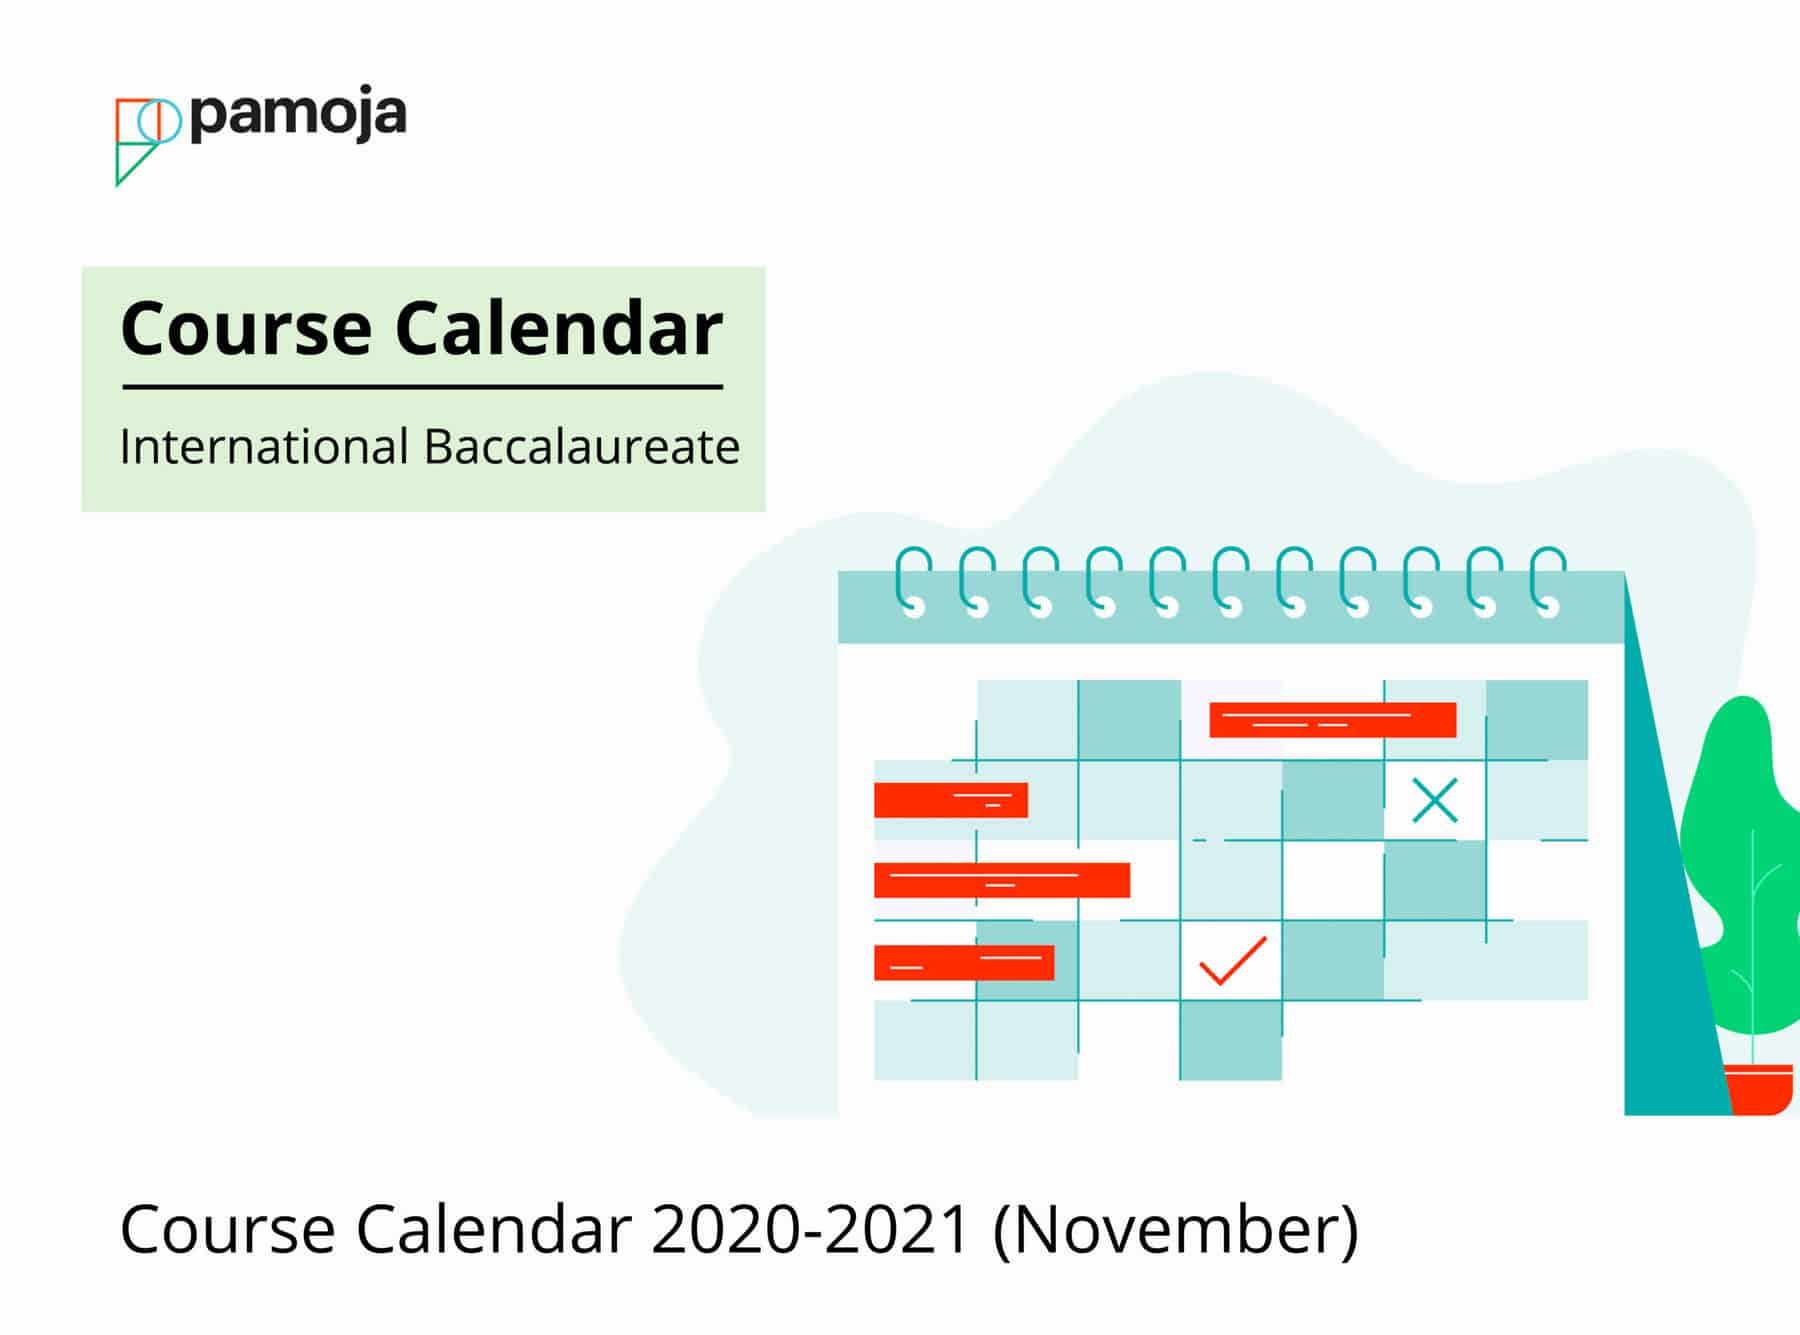 Course Calendar 2020/2021 (Nov)